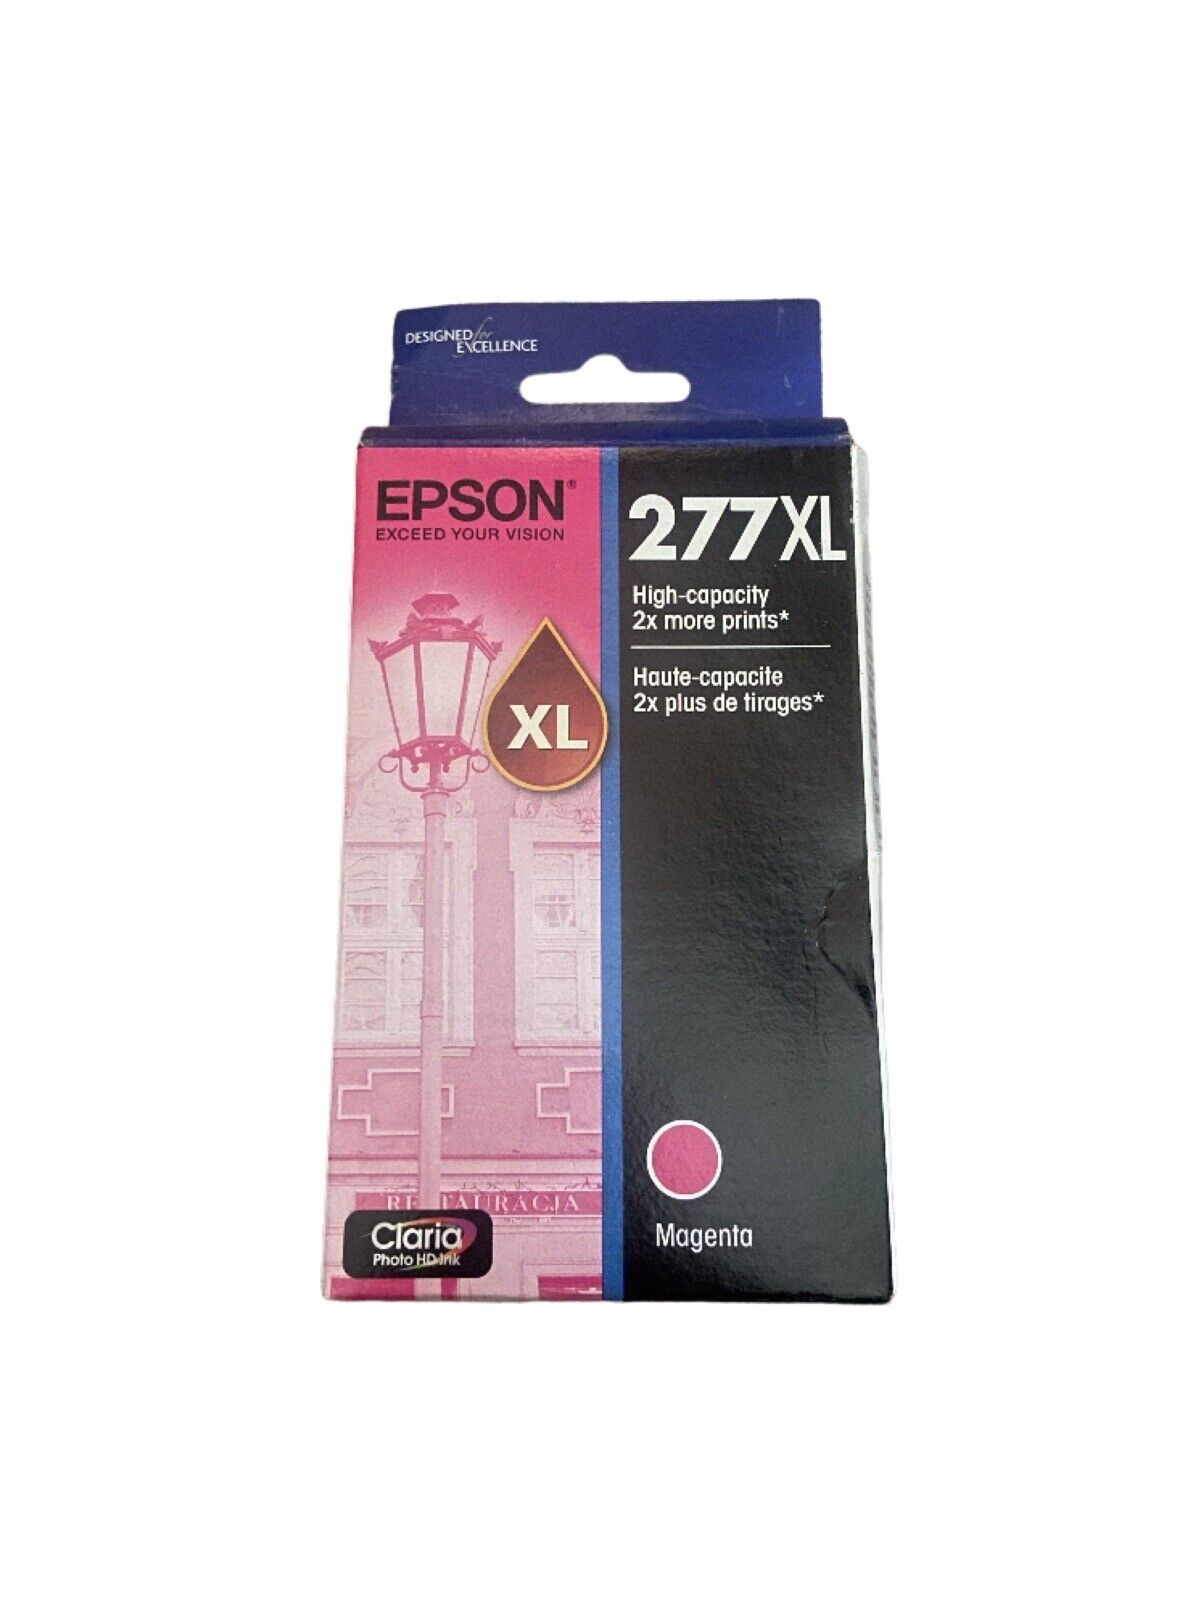 Epson 277XL Megenta ink cartridge. NIB Exp 04/2019 new